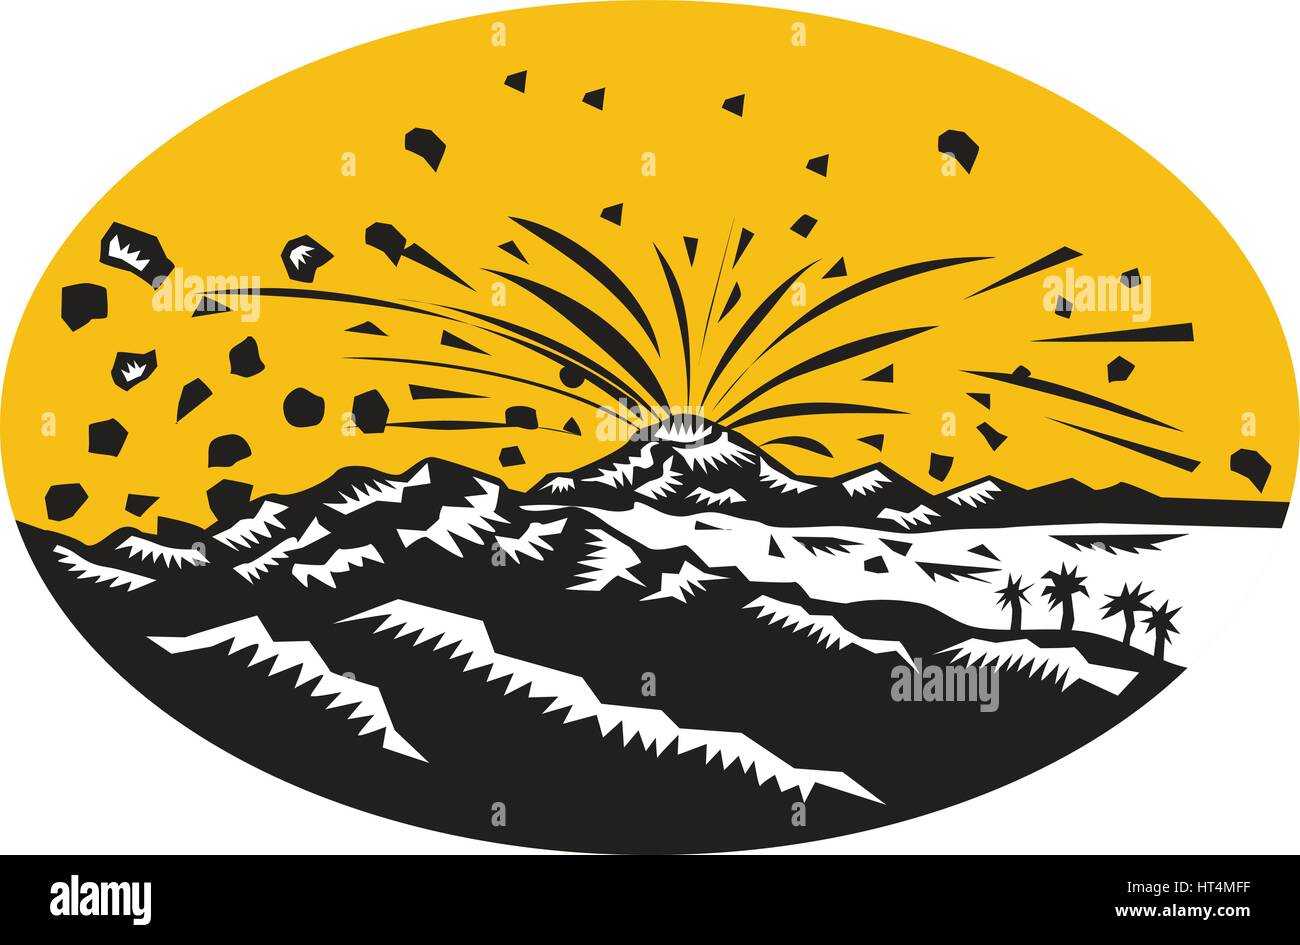 Illustrazione di un vulcano in eruzione eruzione vulcanica conseguente alla formazione dell'isola insieme all'interno di forma ovale fatto in xilografia stile. Illustrazione Vettoriale